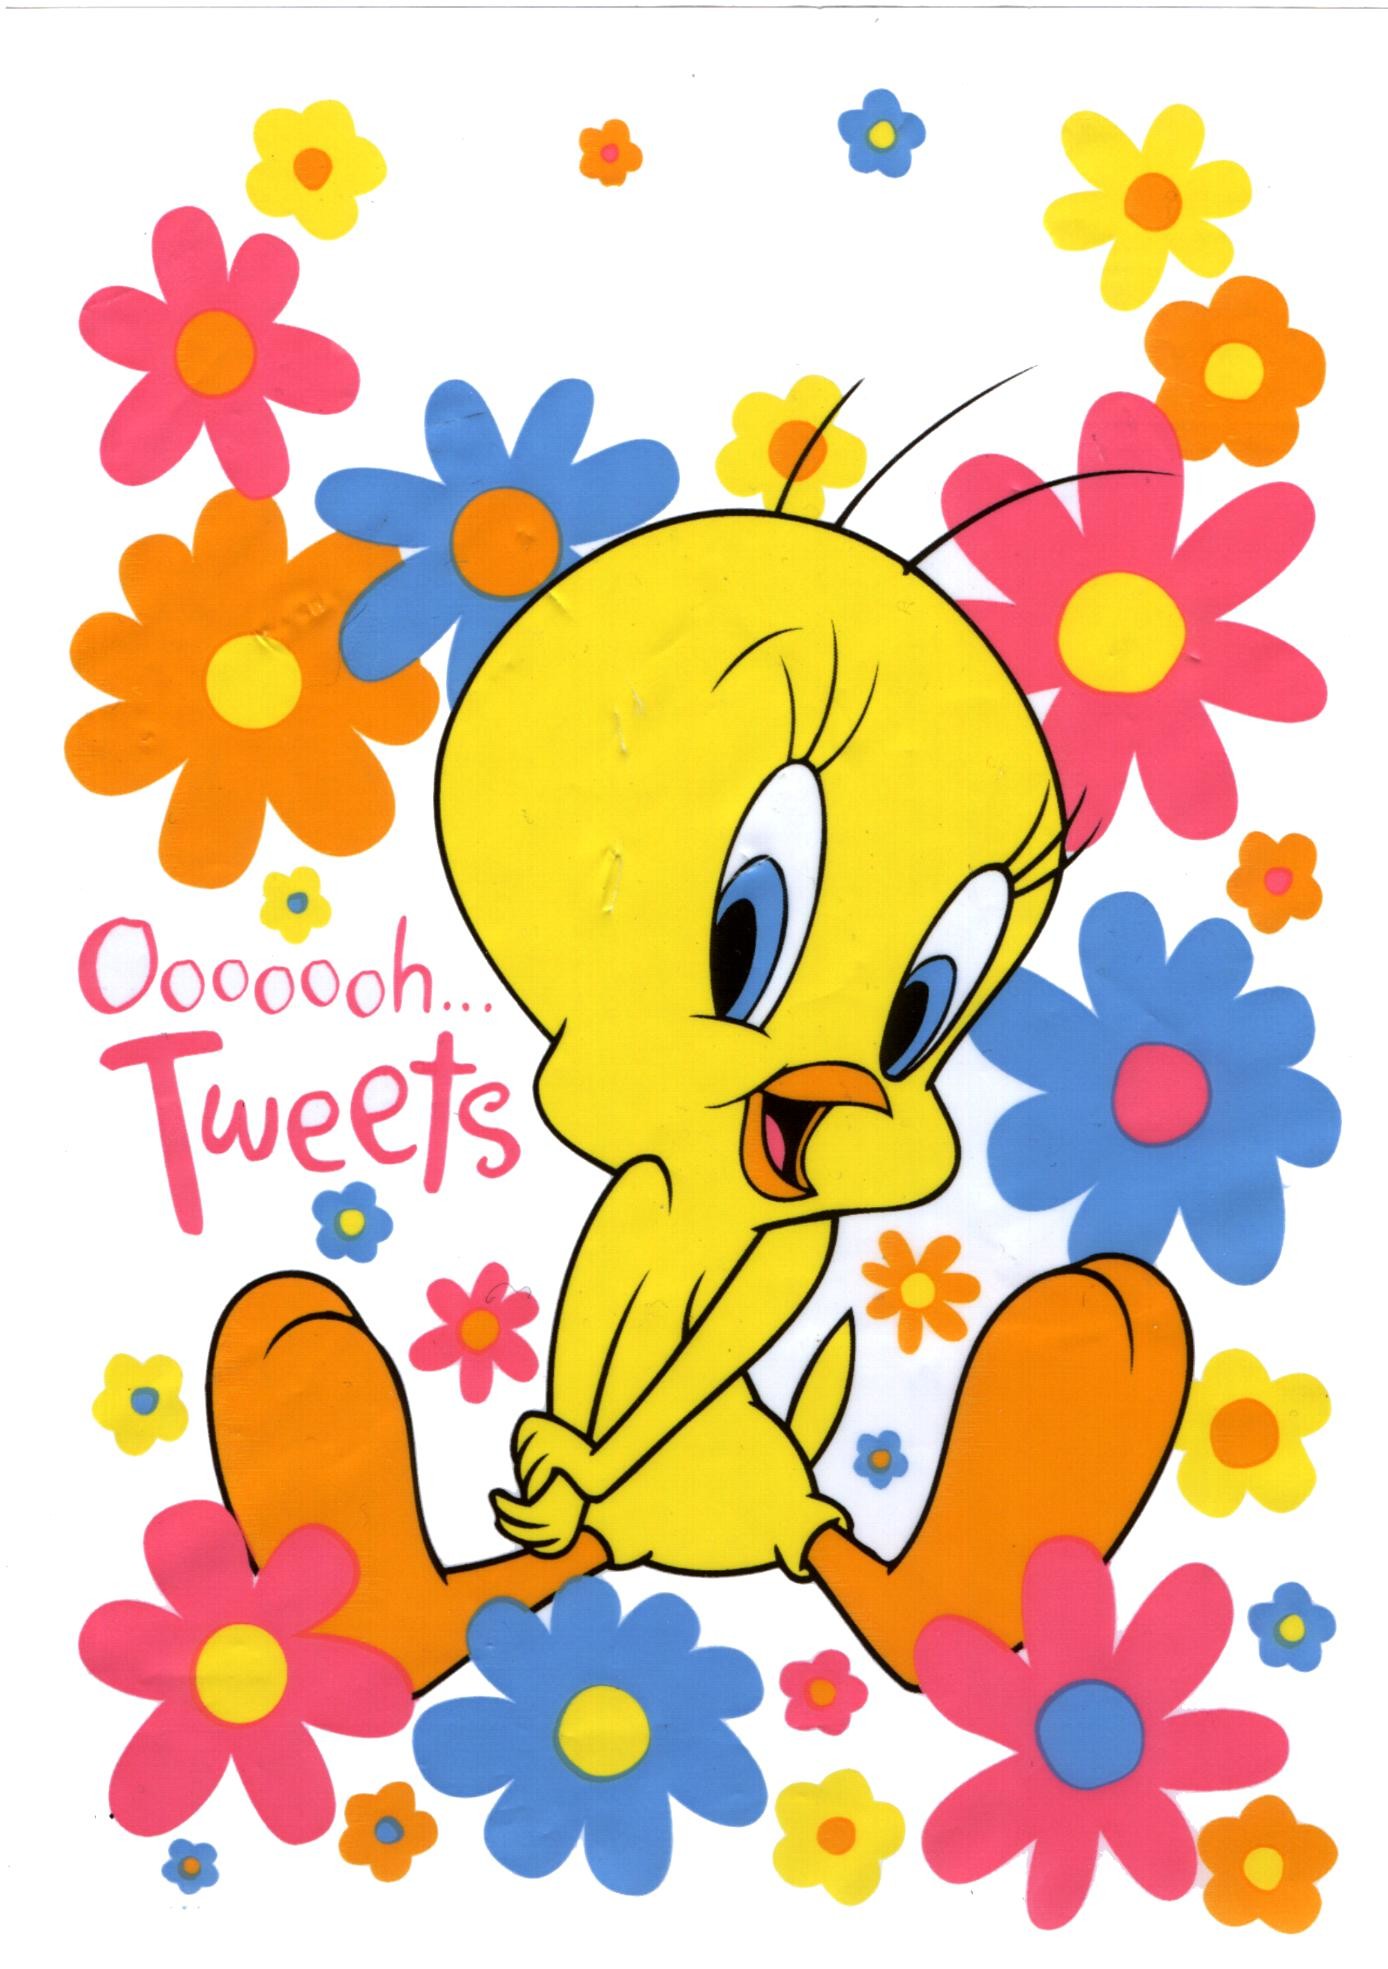 Tweety Bird illustration, Tweety Text Smiley Cartoon, Tweety Bird